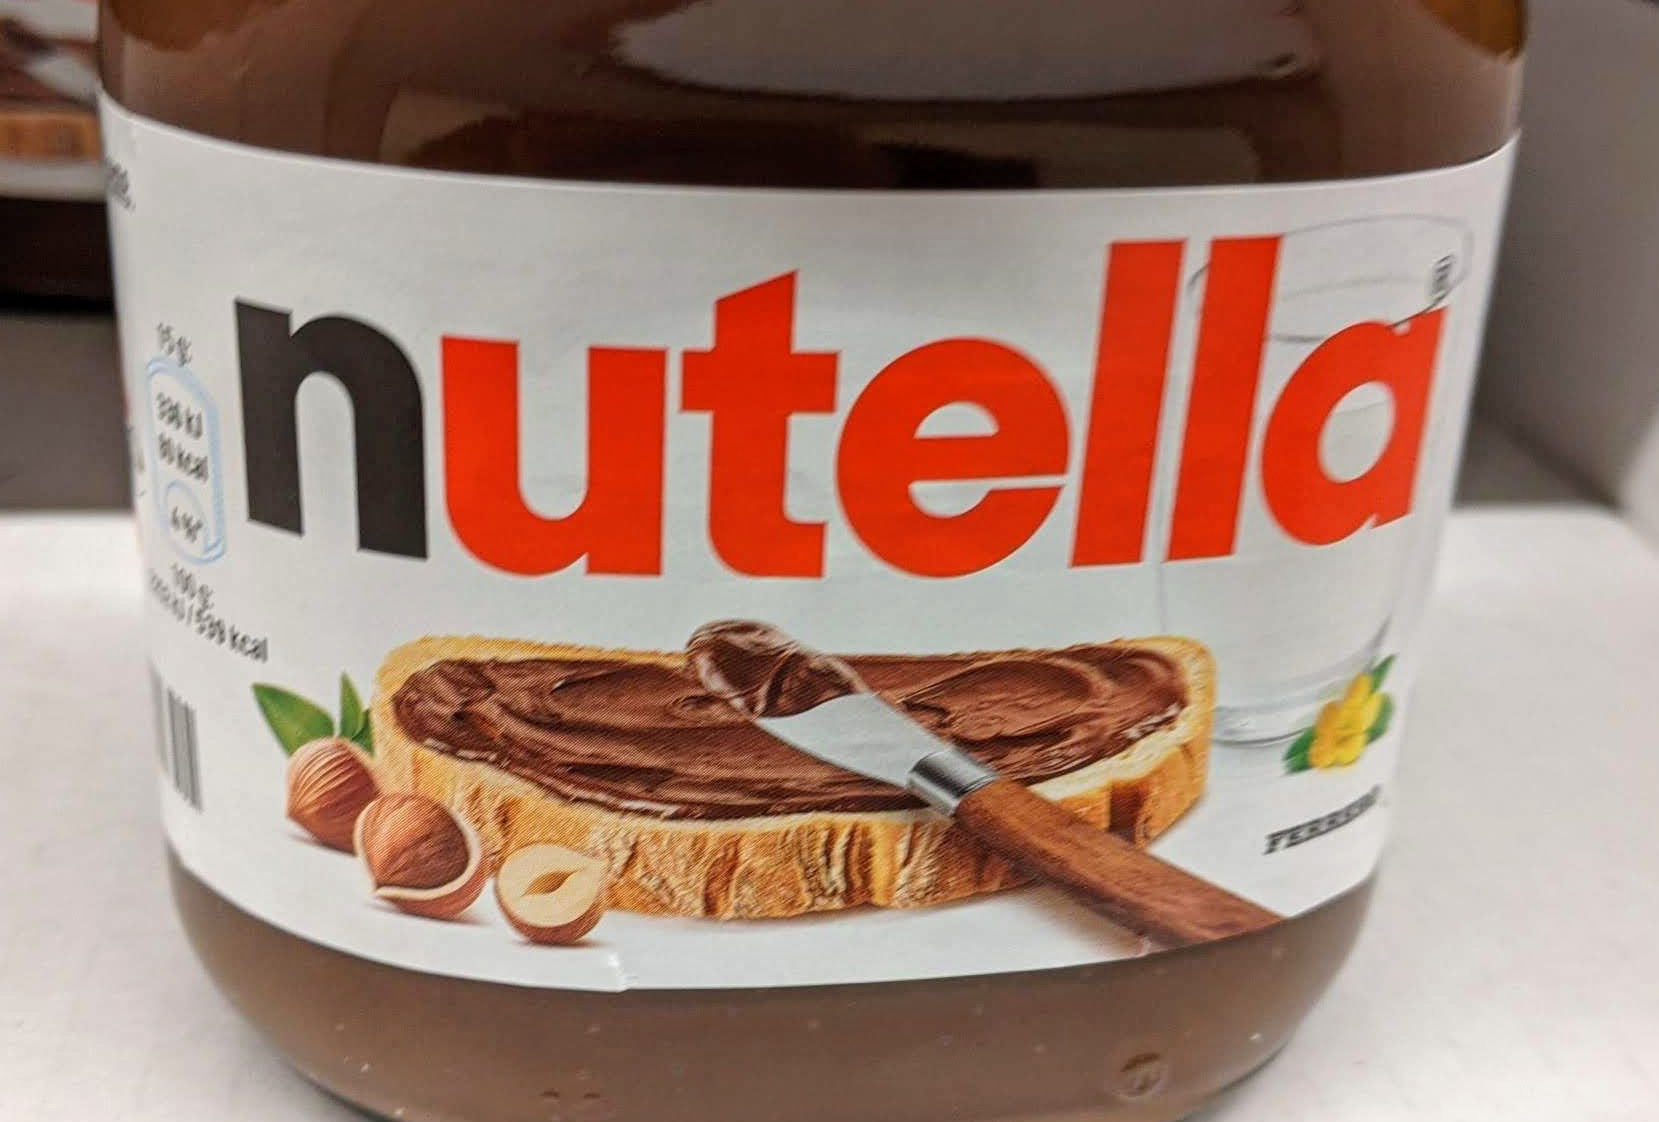 Nutella Rezeptbuch gratis mit Name und Lieblingsrezepten - Aktionscode eingeben